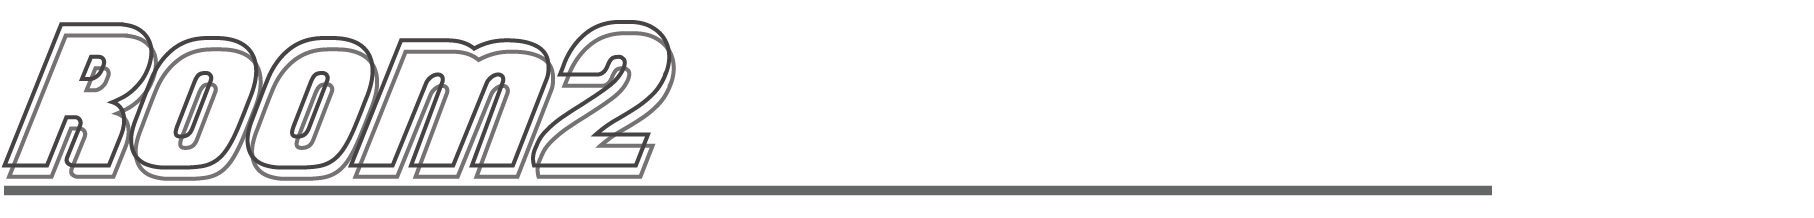 横浜上大岡発の新感覚のデジタルコミュニティー施設【プロモーションデザイン動画『e-VERSE(イーバース )』